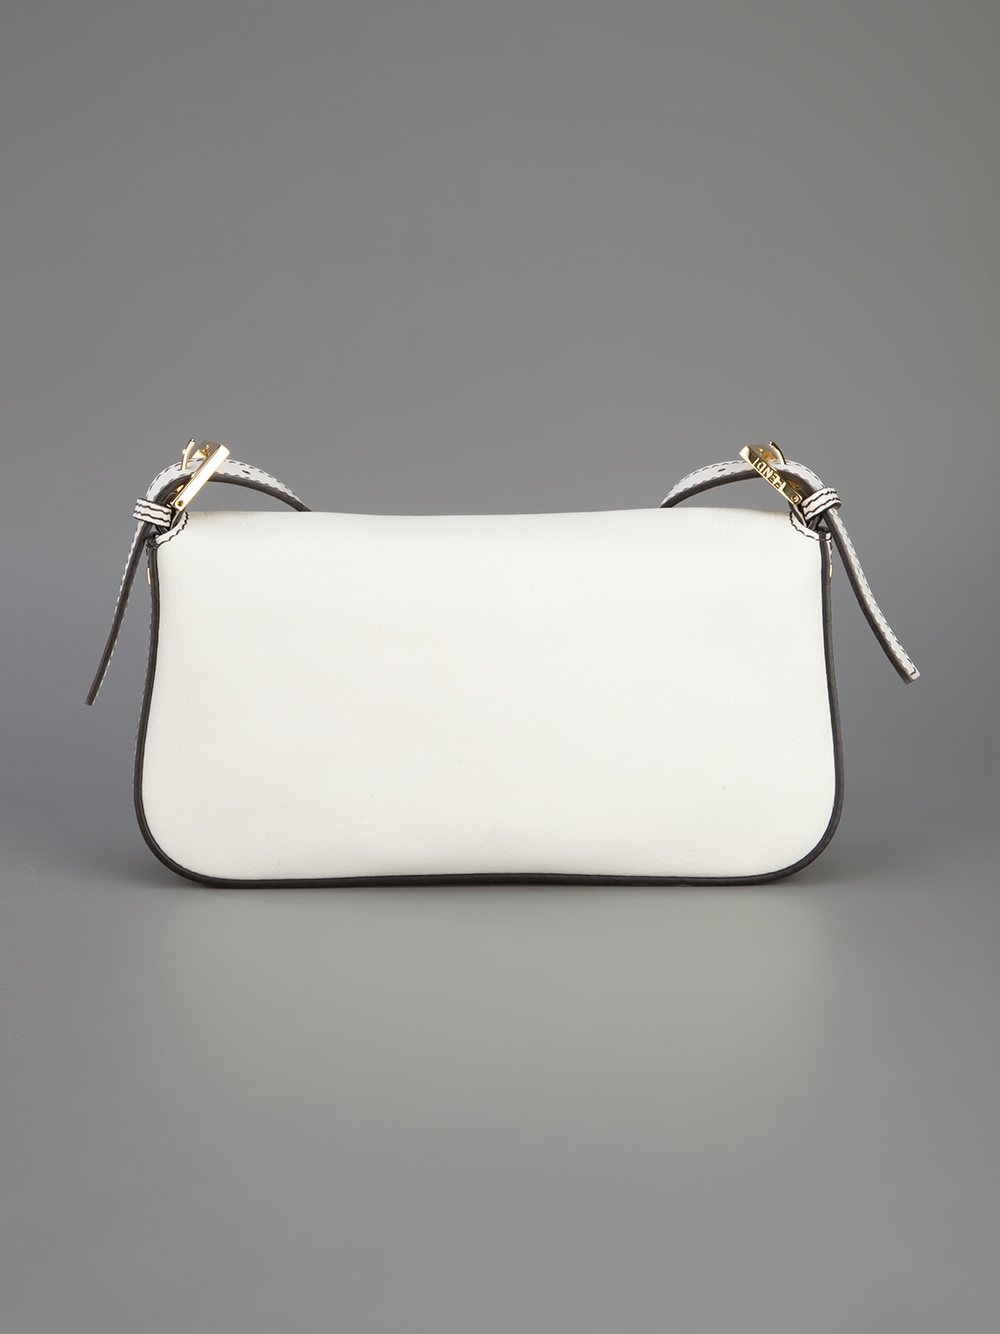 Fendi Baguette Shoulder Bag in White - Lyst